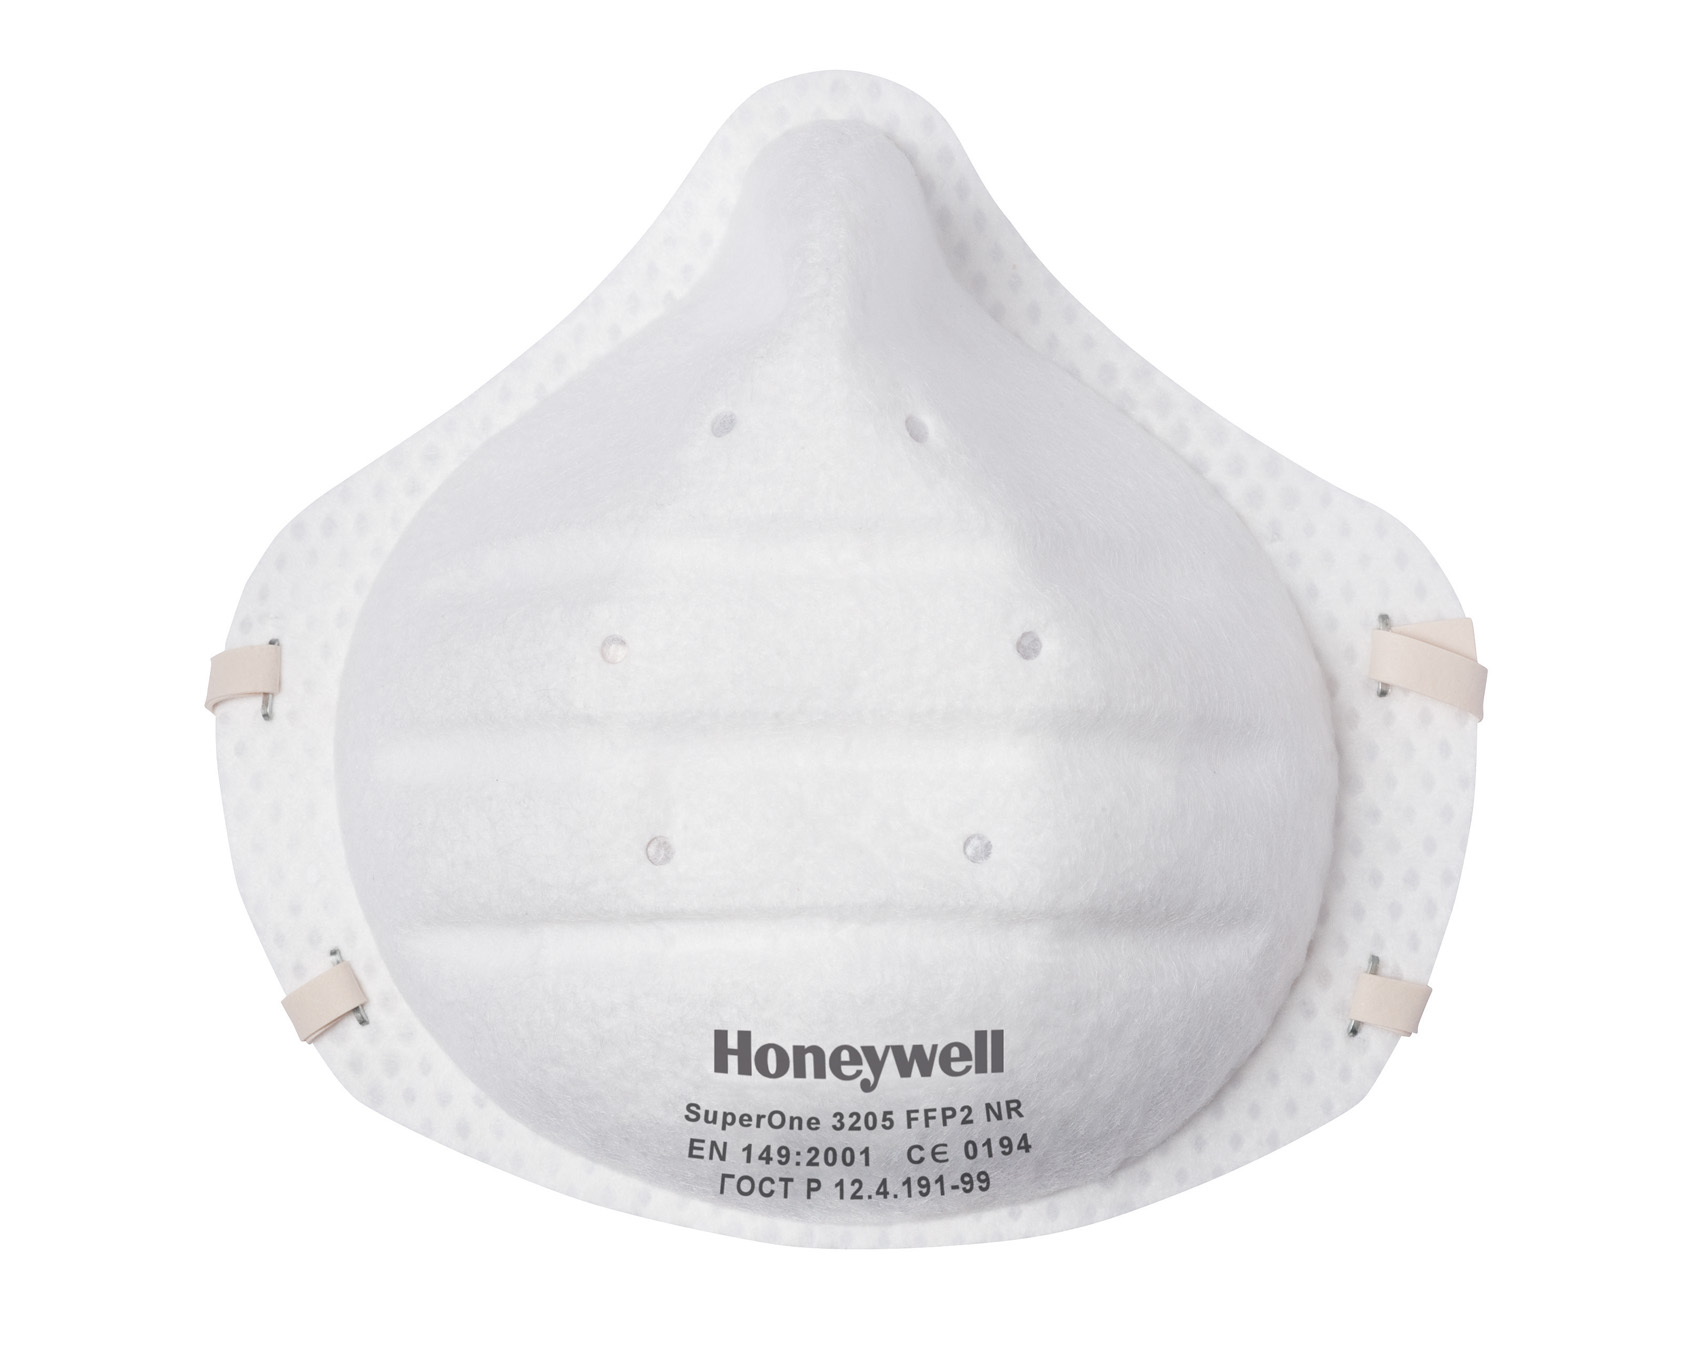 Honeywell SuperOne 3205 FFP2 Maske - 1 Box à 30 Masken